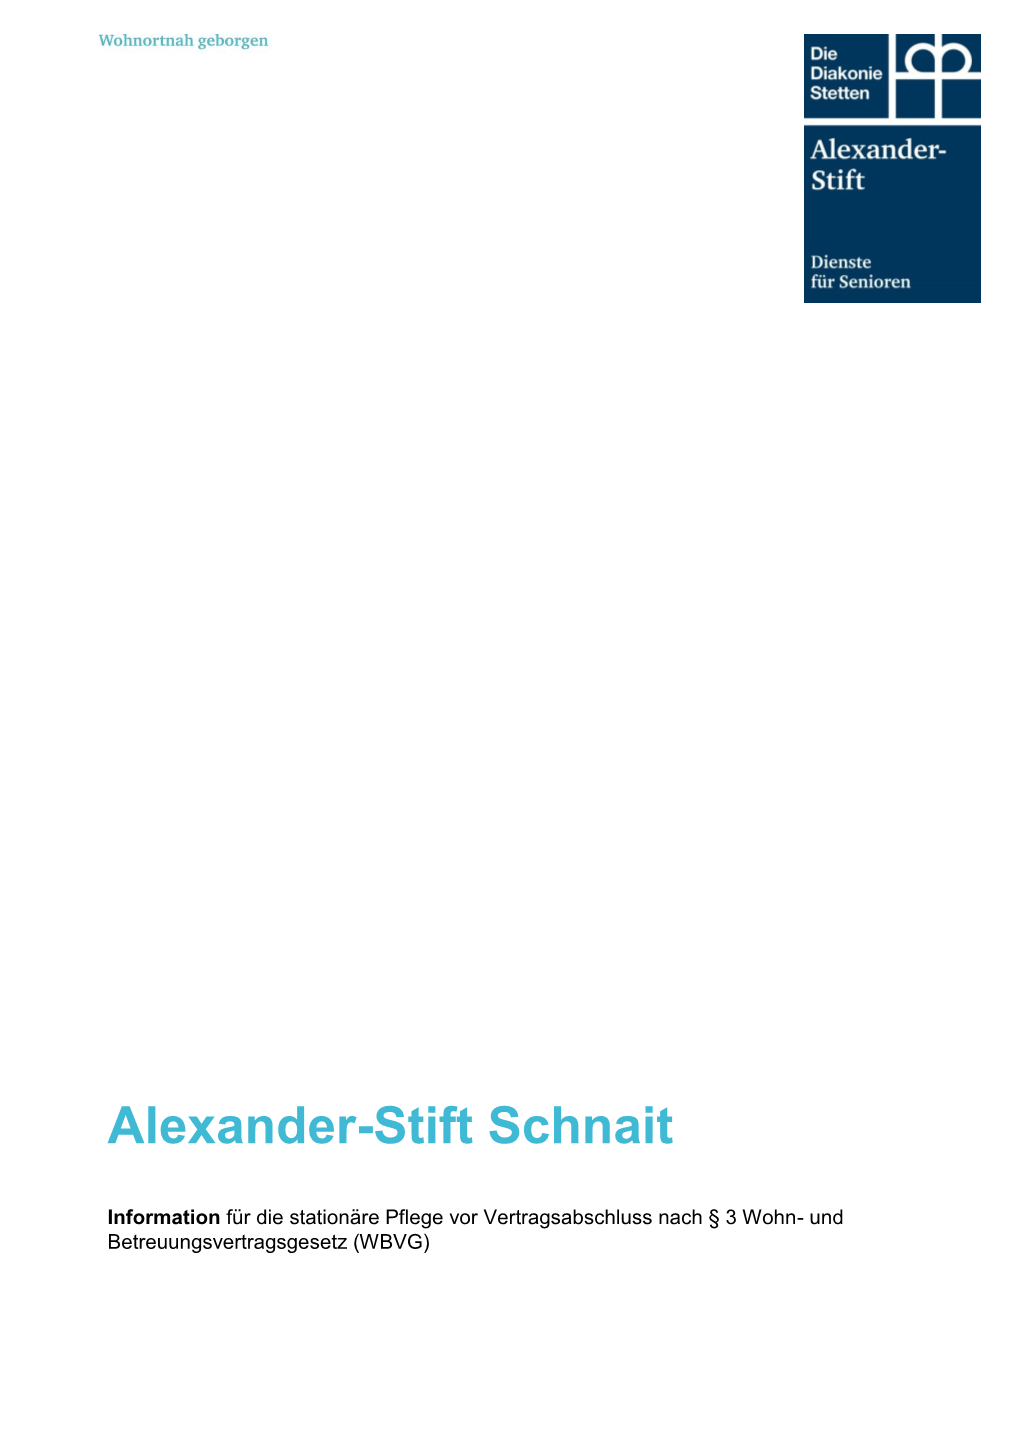 Alexander-Stift Schnait